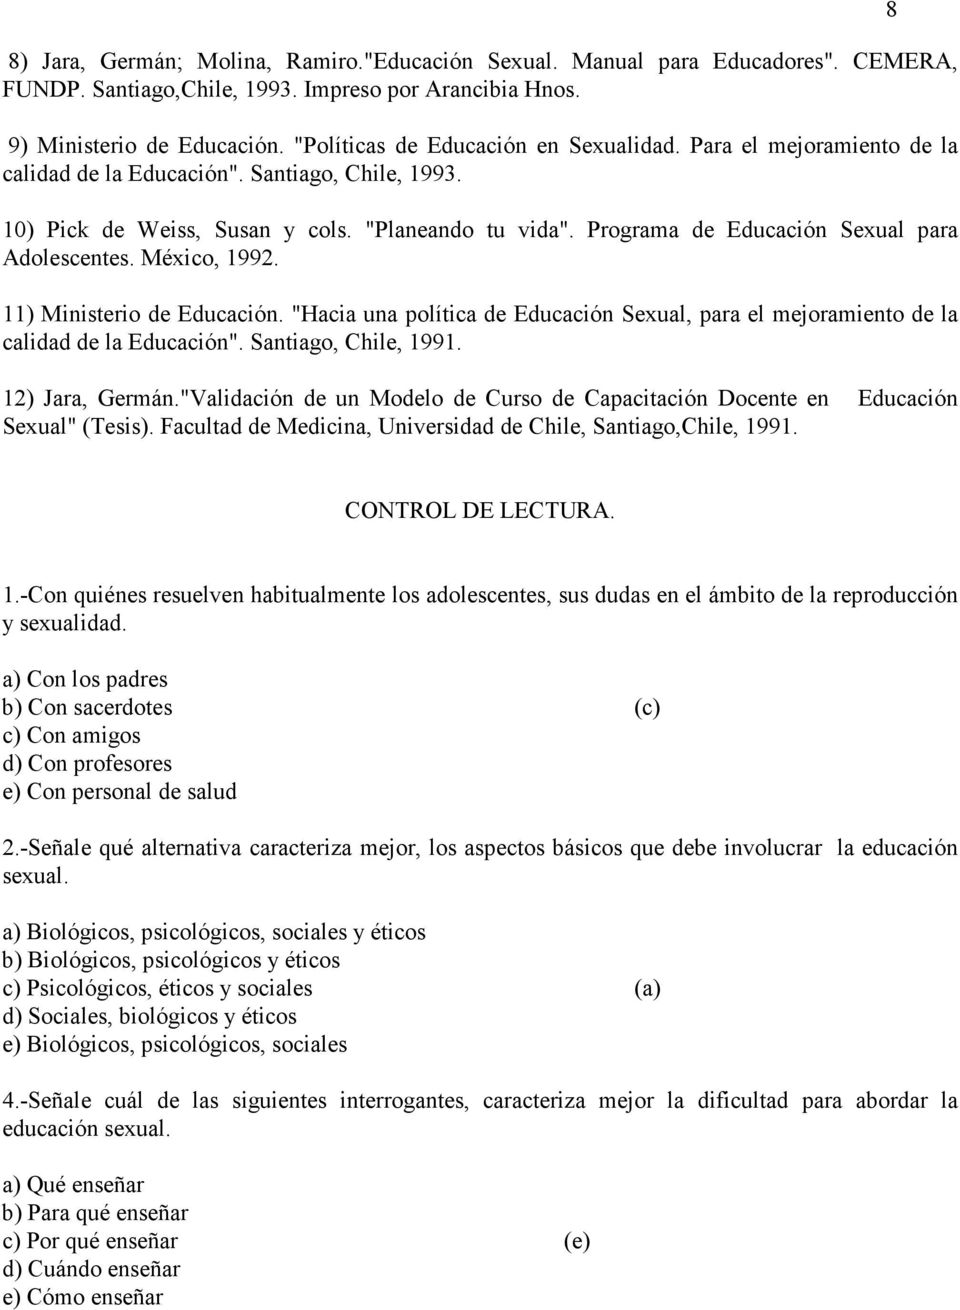 Programa de Educación Sexual para Adolescentes. México, 1992. 11) Ministerio de Educación. "Hacia una política de Educación Sexual, para el mejoramiento de la calidad de la Educación".